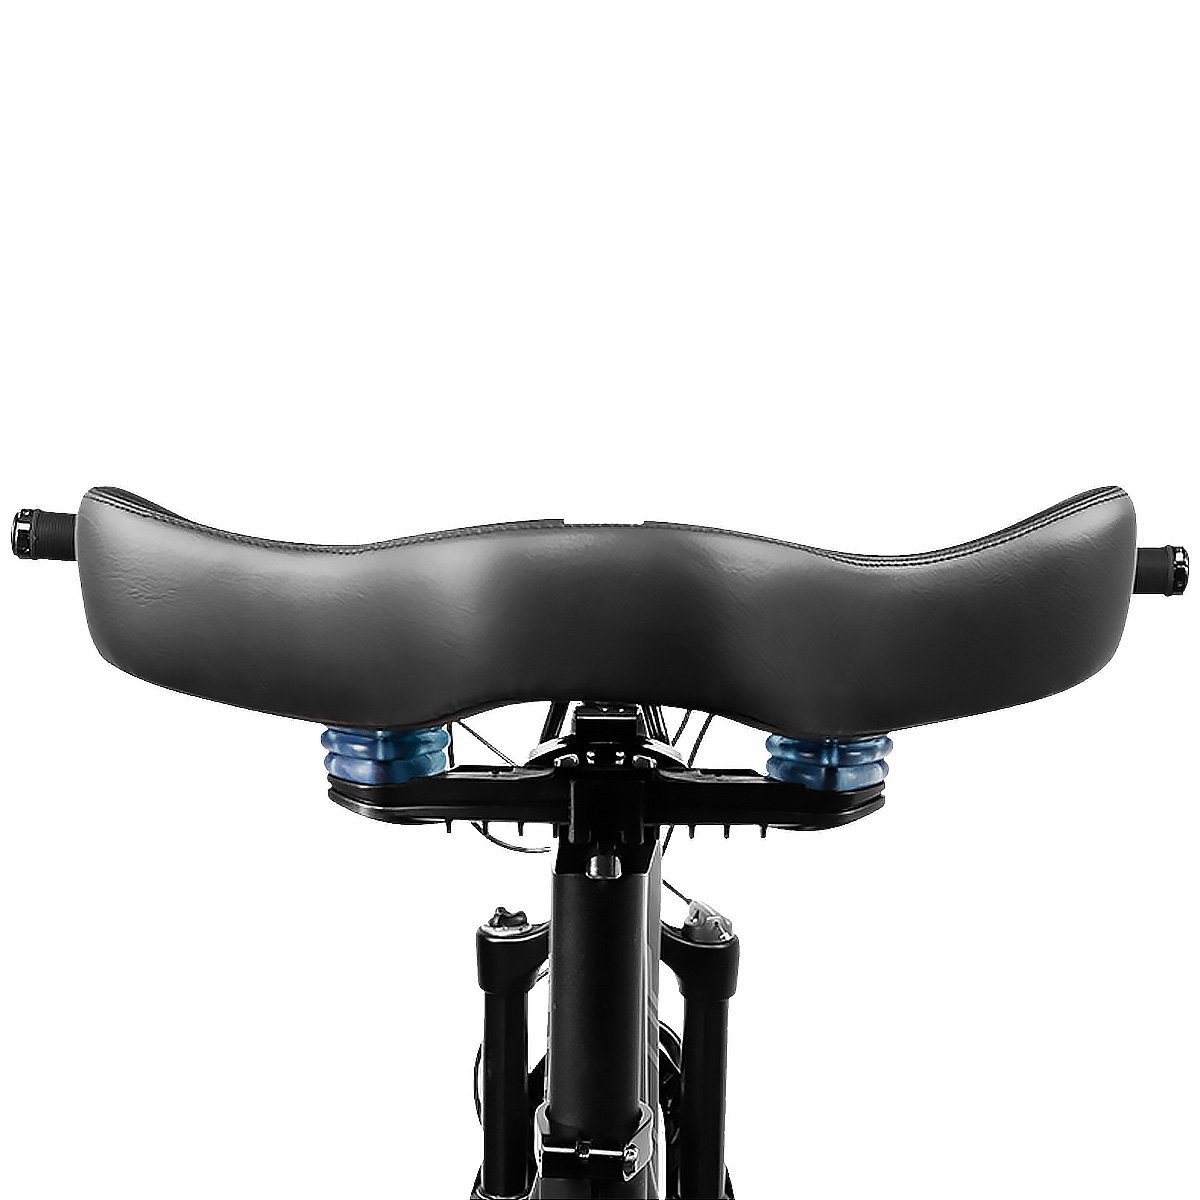 MidGard Fahrradsattel Fahrrad Sattel mit und Fahrradsitz gepolsterten extra breiten